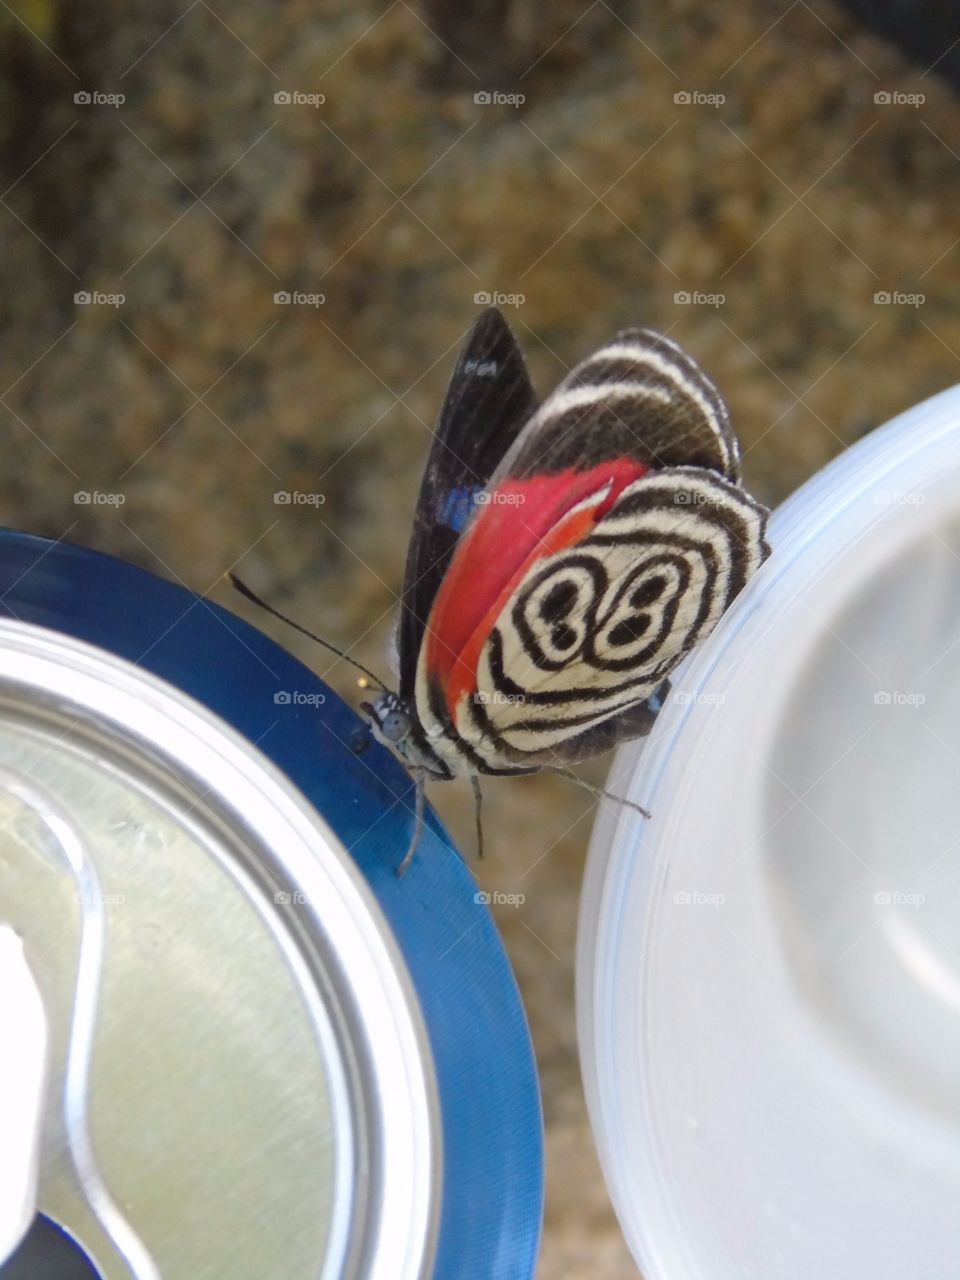 Butterflying